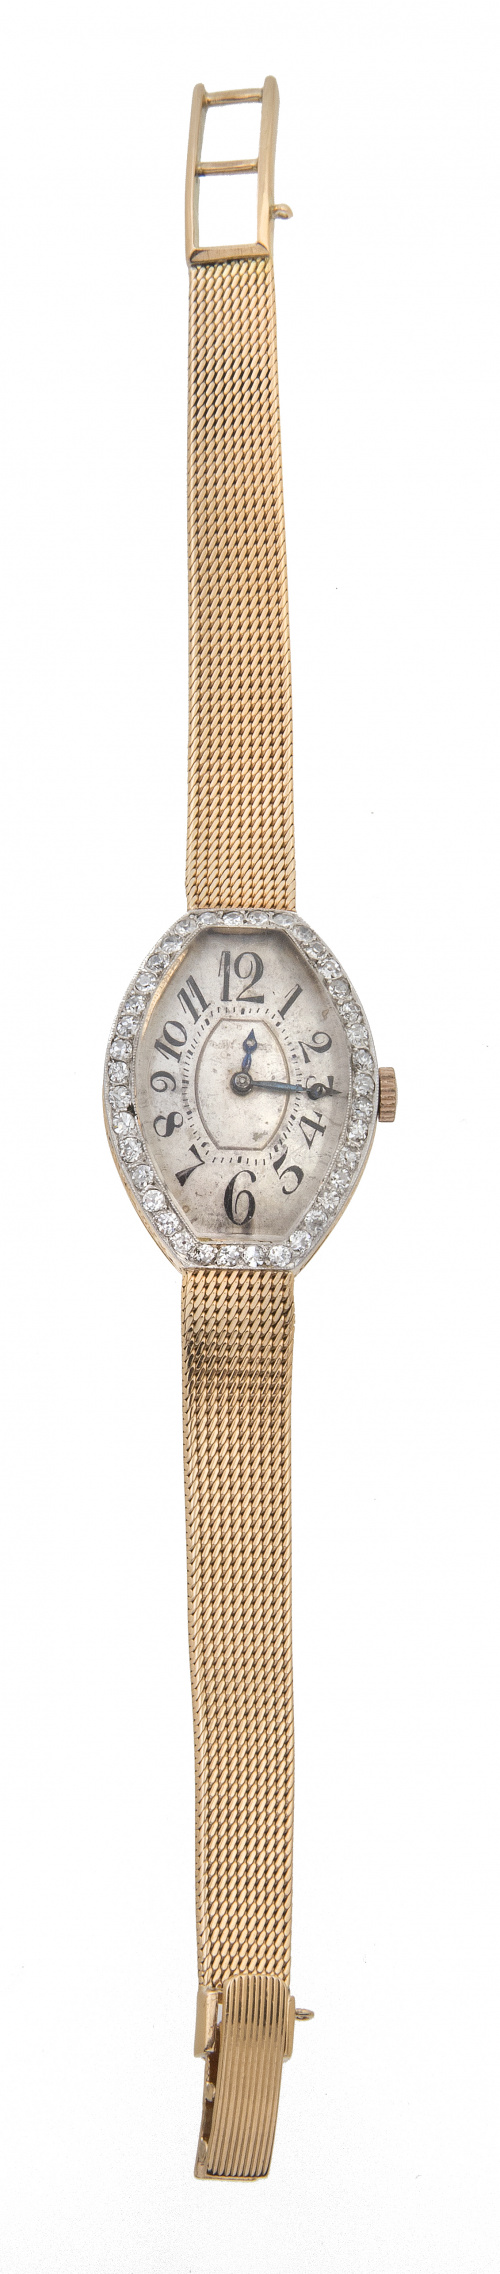 Reloj de pulsera para sra LONGINES años 30 de oro y brillan